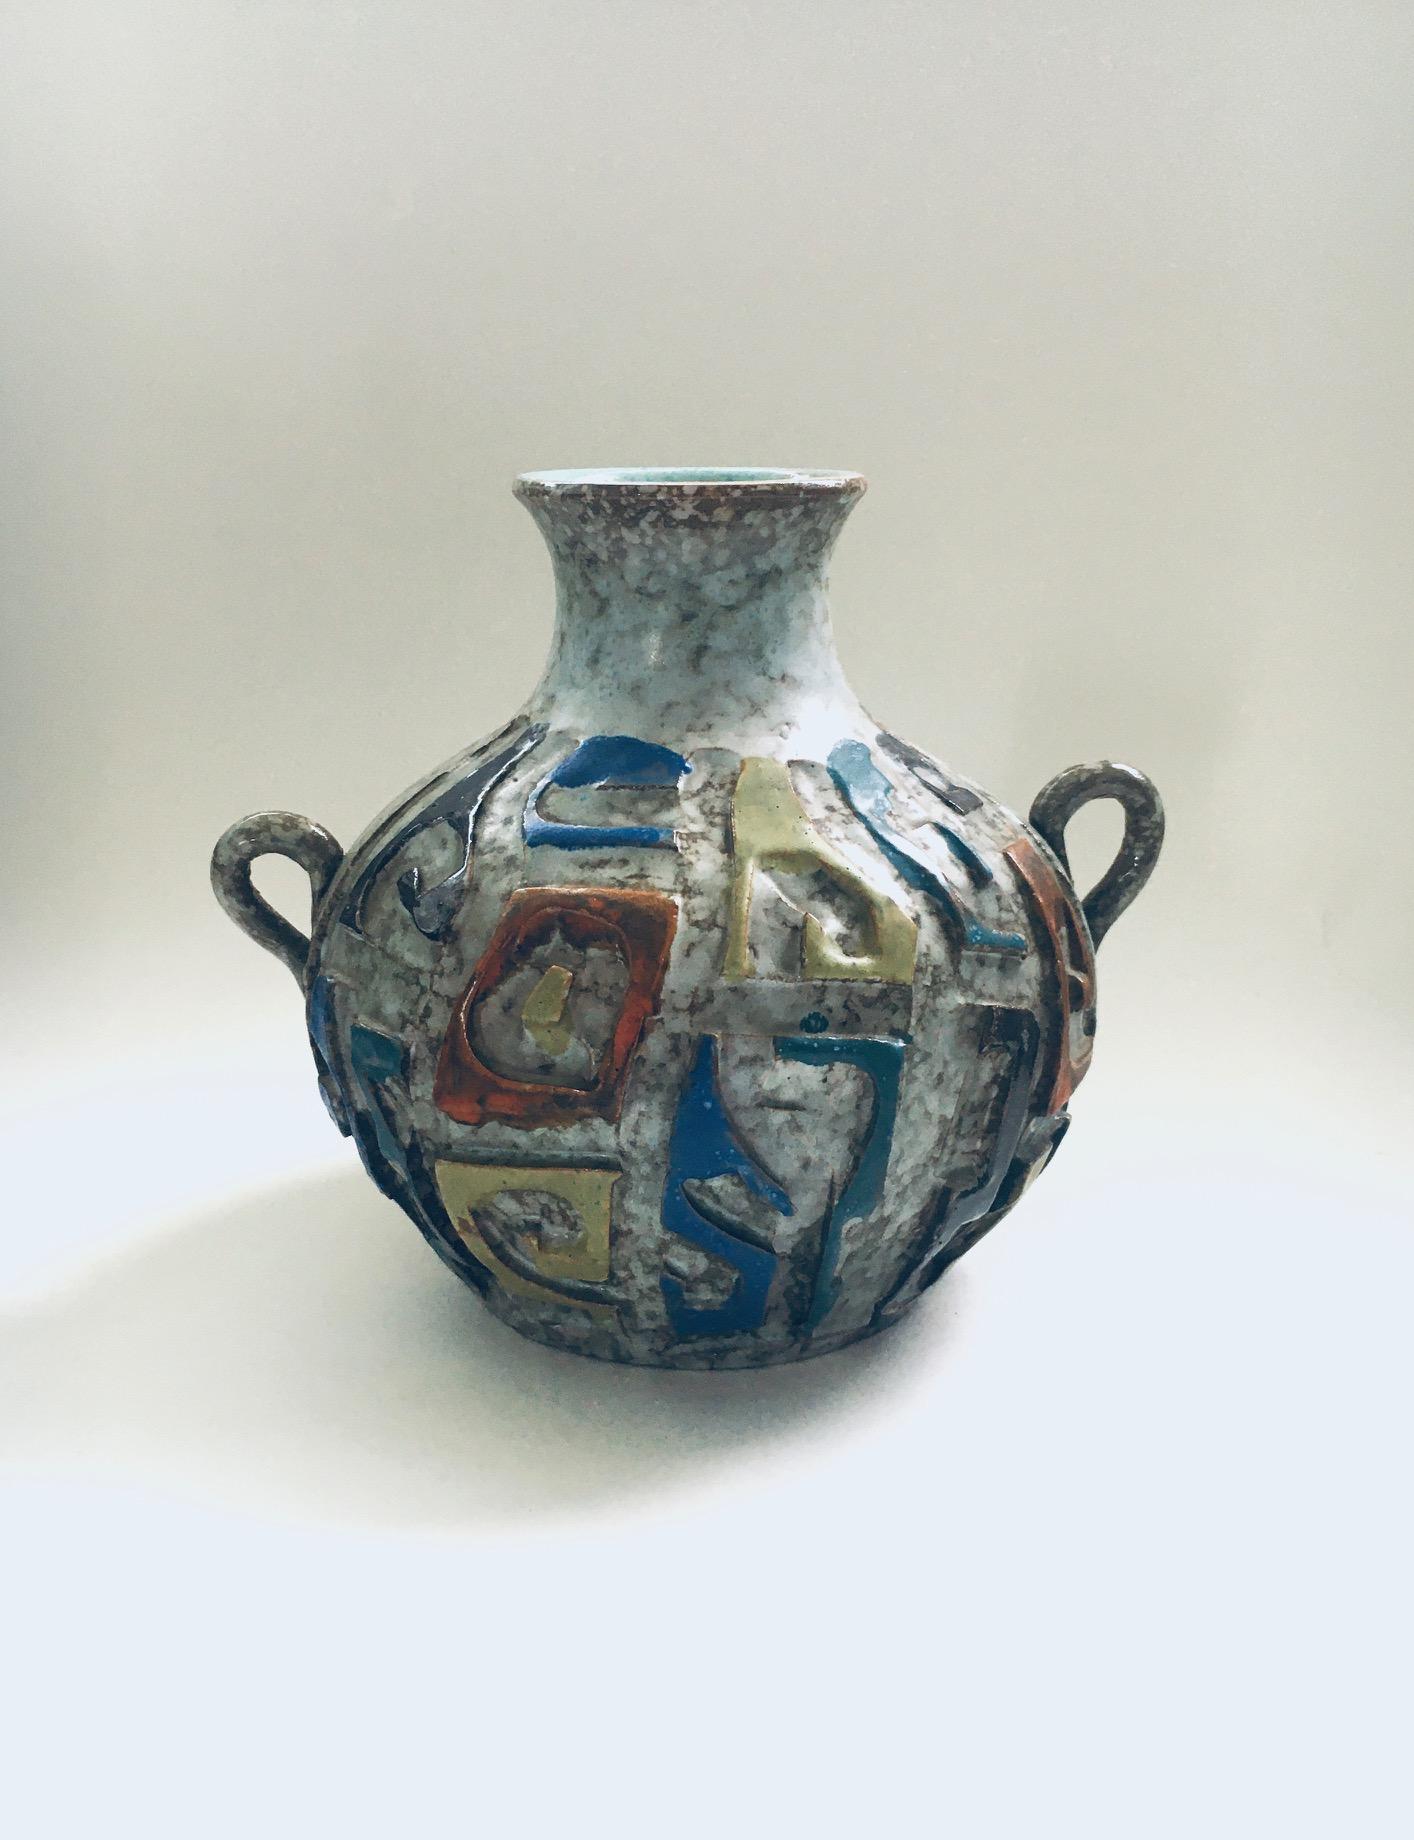 Vintage Midcentury Art Pottery Studio Hand Made Carved Handle Vase. Hergestellt in Spanien, 1960er Jahre. Vase im brutalistischen Stil, handwerklich hergestellt, mit grauer Unterglasur und blauen, orangefarbenen, gelb-grünlichen und braunen